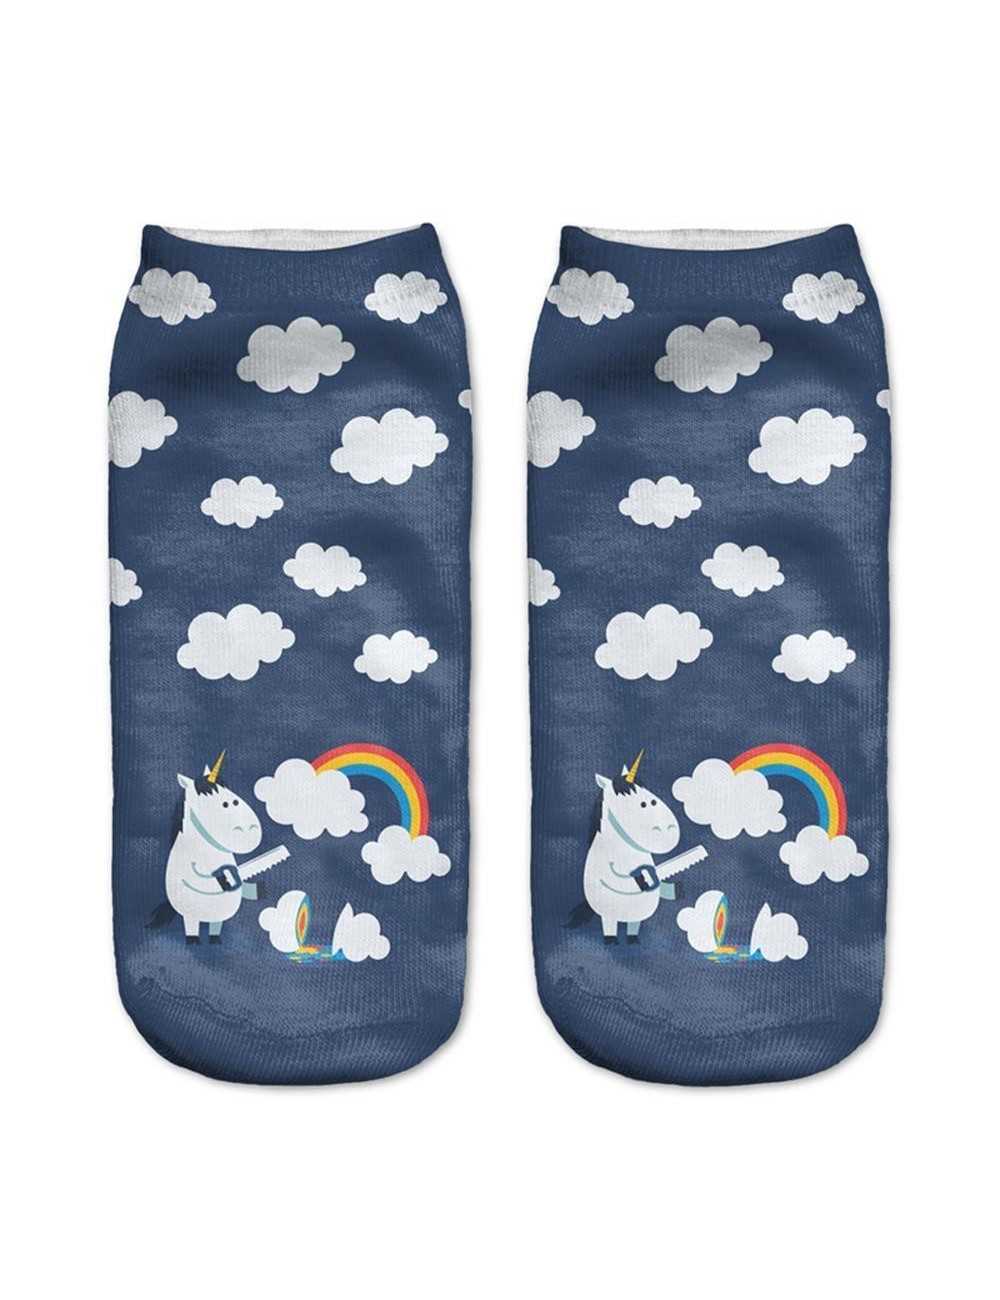 Medias azules con estampado de unicornios con nubes